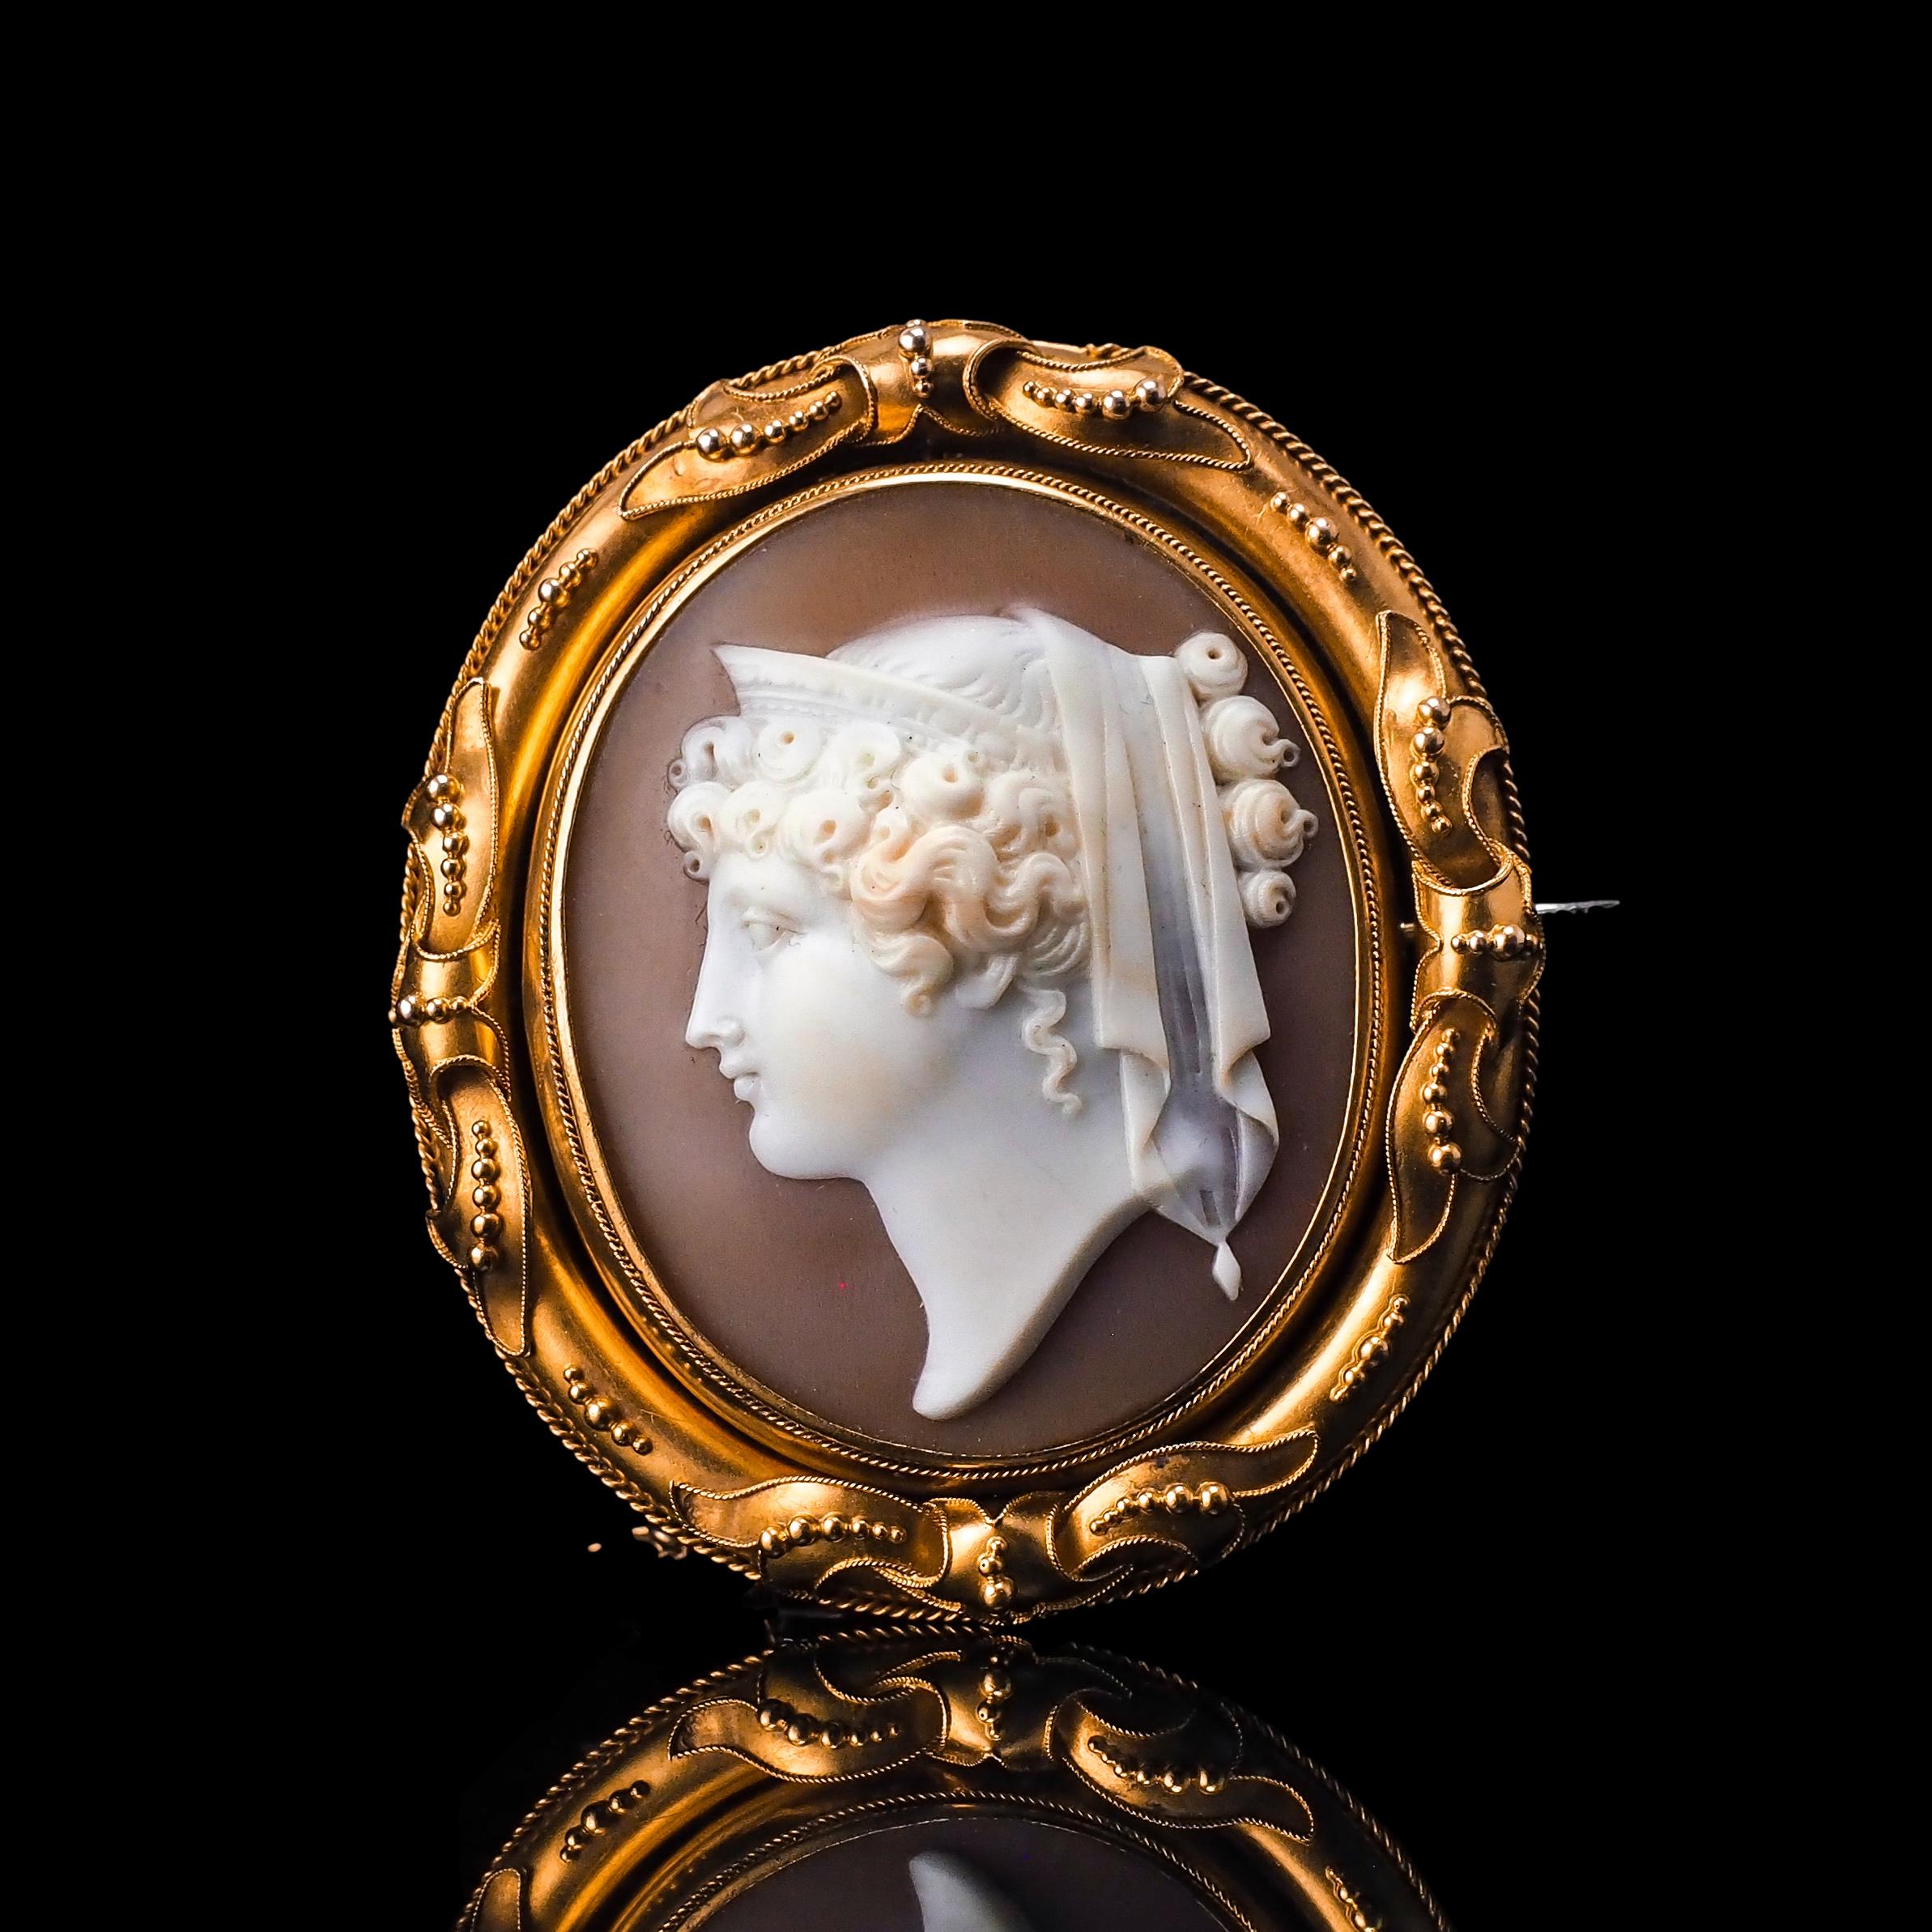 Bienvenue chez Artisan Antiques, basé à Mayfair, Londres - Nous sommes ravis de vous proposer cette magnifique broche/pendentif en camée coquillage en or 18ct, fabriqué vers 1860, représentant une figure de proue d'Héra - déesse mythologique grecque